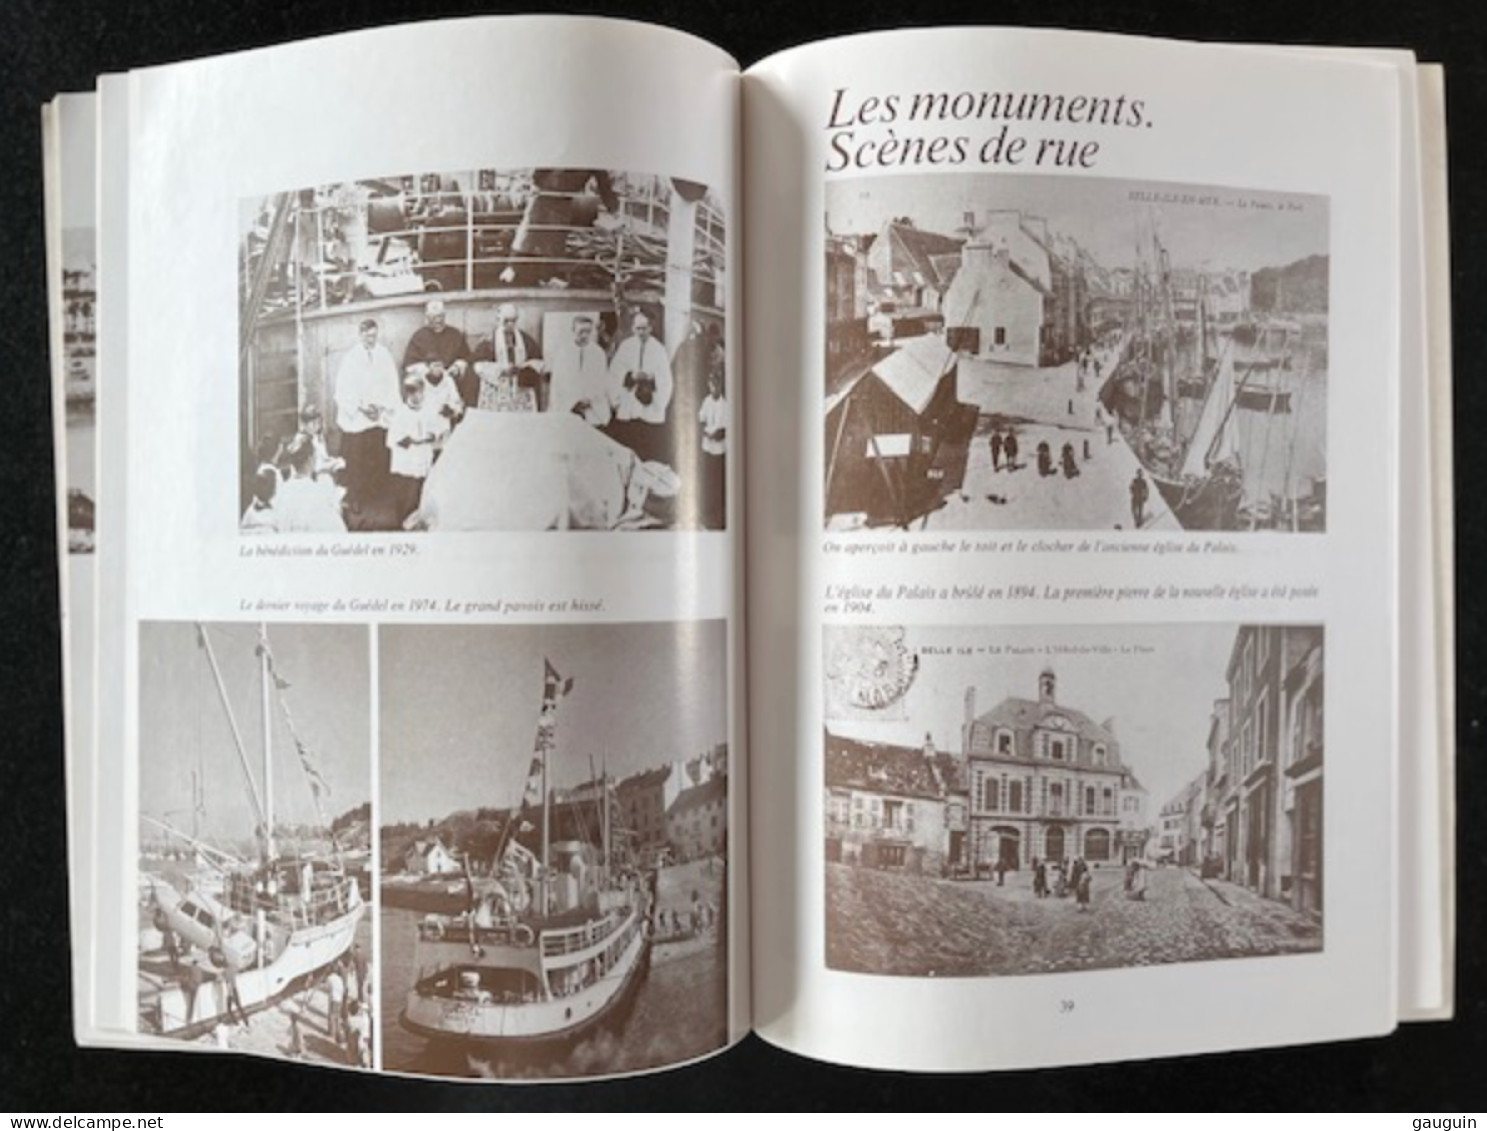 BELLE-ISLE-en-MER - "Images Du Passé" Repro. Cartes Postales Anciennes - Editions Lestrac - 78 Pages / 1977 §TOP RARE§ - Bücher & Kataloge